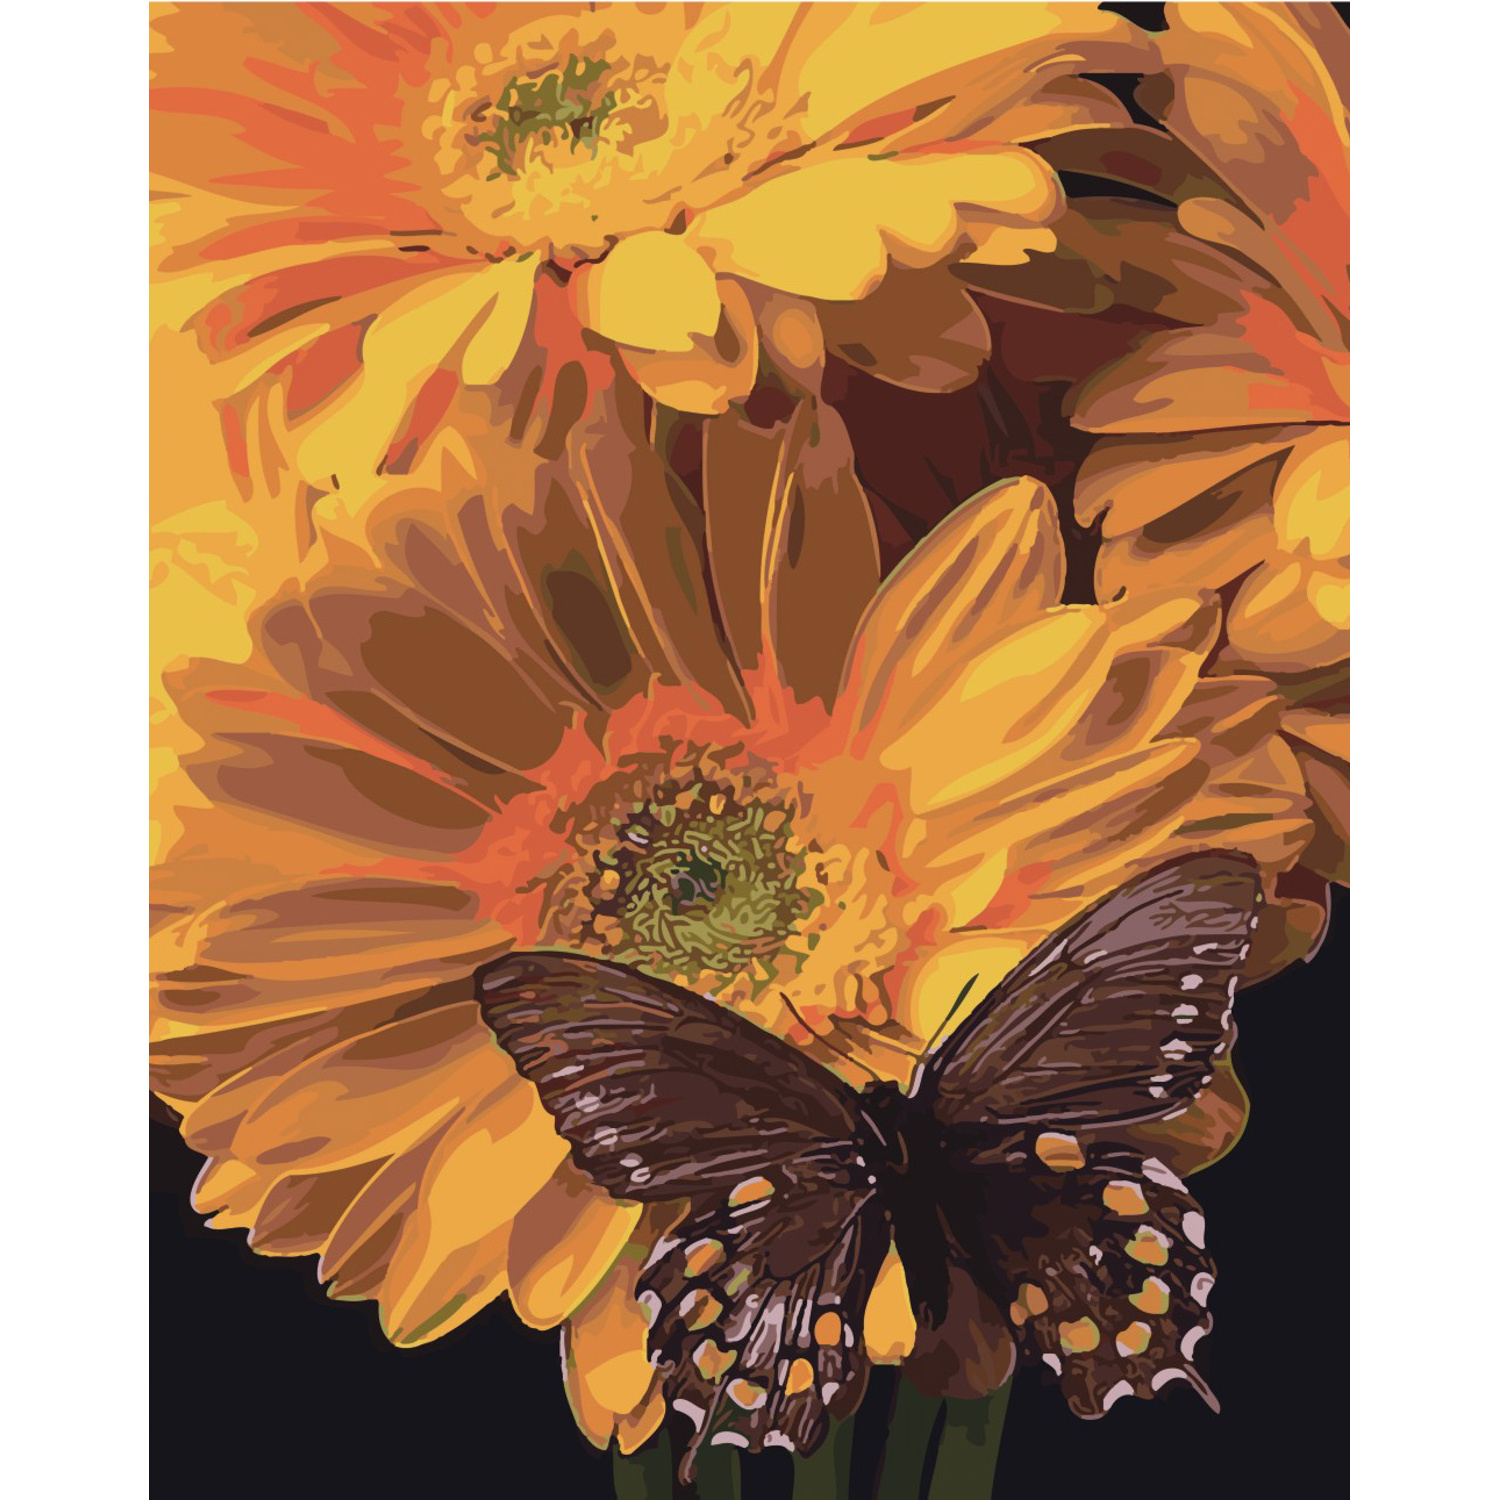 Malen nach Zahlen Strateg Schmetterling auf einer Sonnenblume auf farbigem Hintergrund Größe 40x50 cm (SY6472)